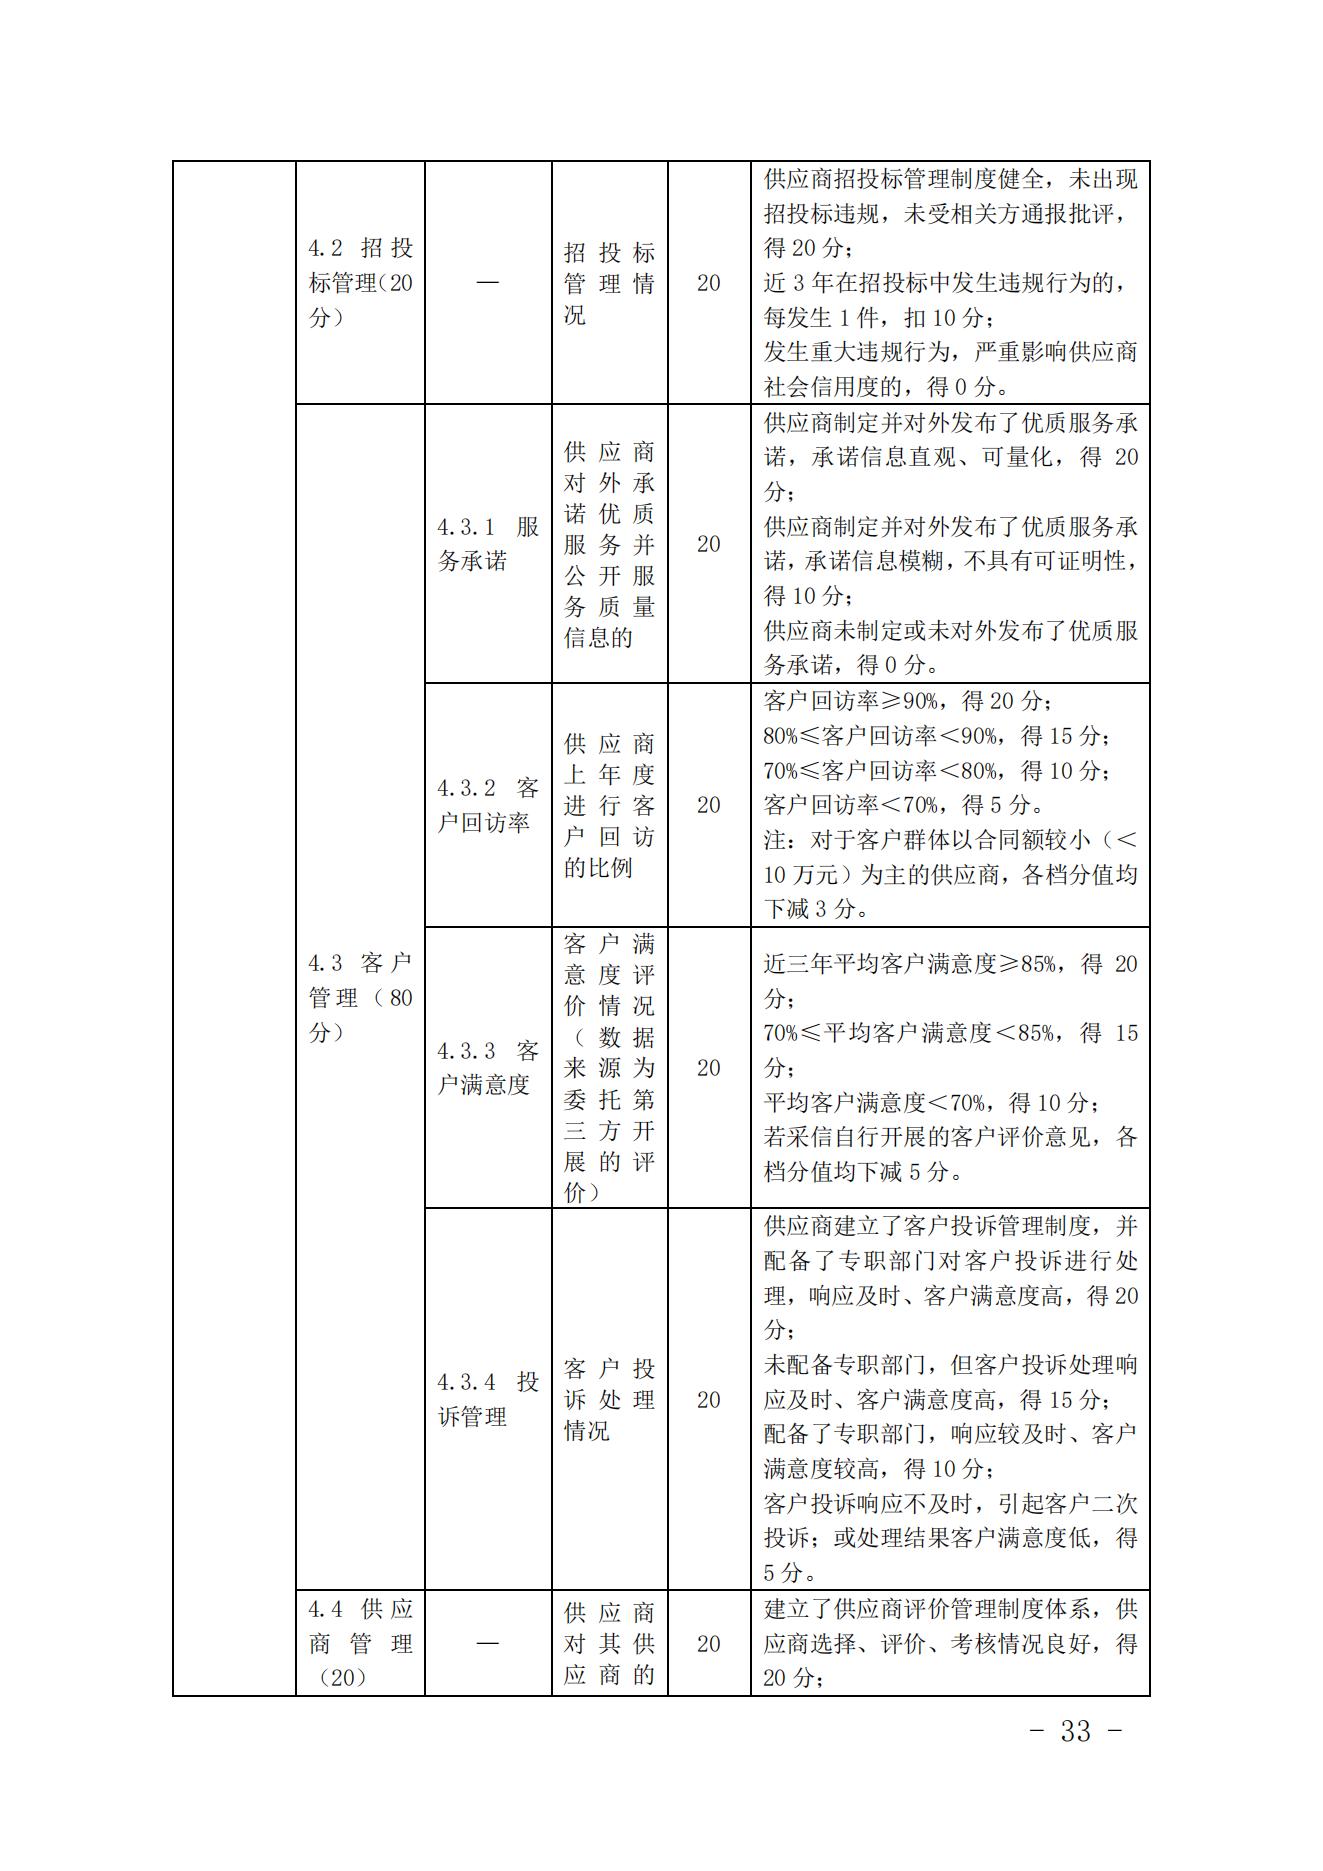 关于印发《中国核能行业协会核能行业供应商信用评价管理办法》《中国核能行业协会核能行业供应商信用评价规范》的通知_32.jpg